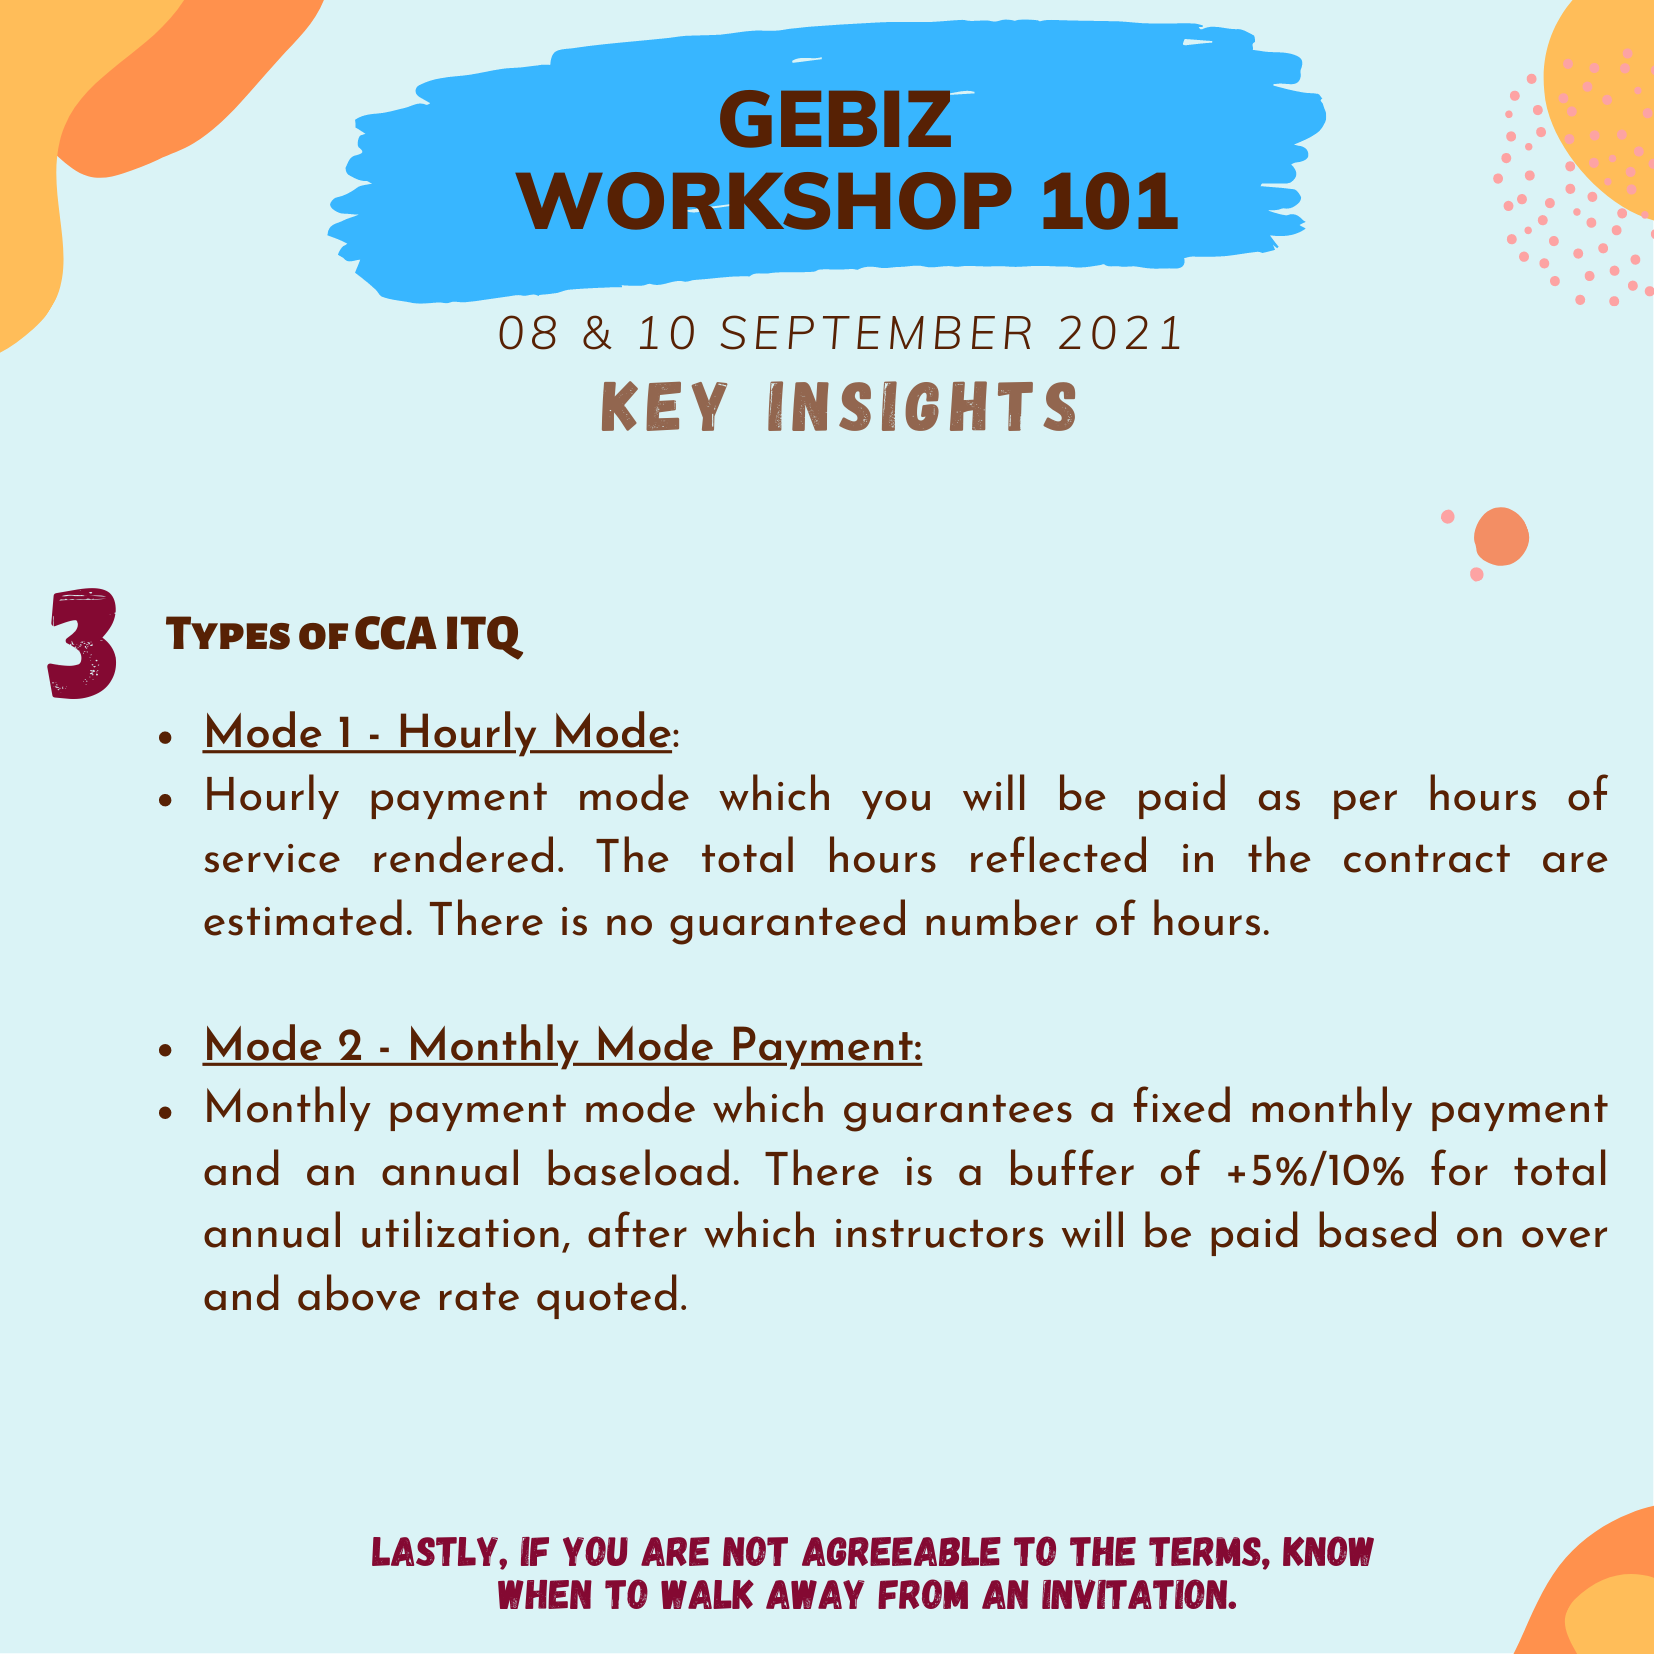 NICA GeBiz Workshop 101 - 08 & 10 September 2021